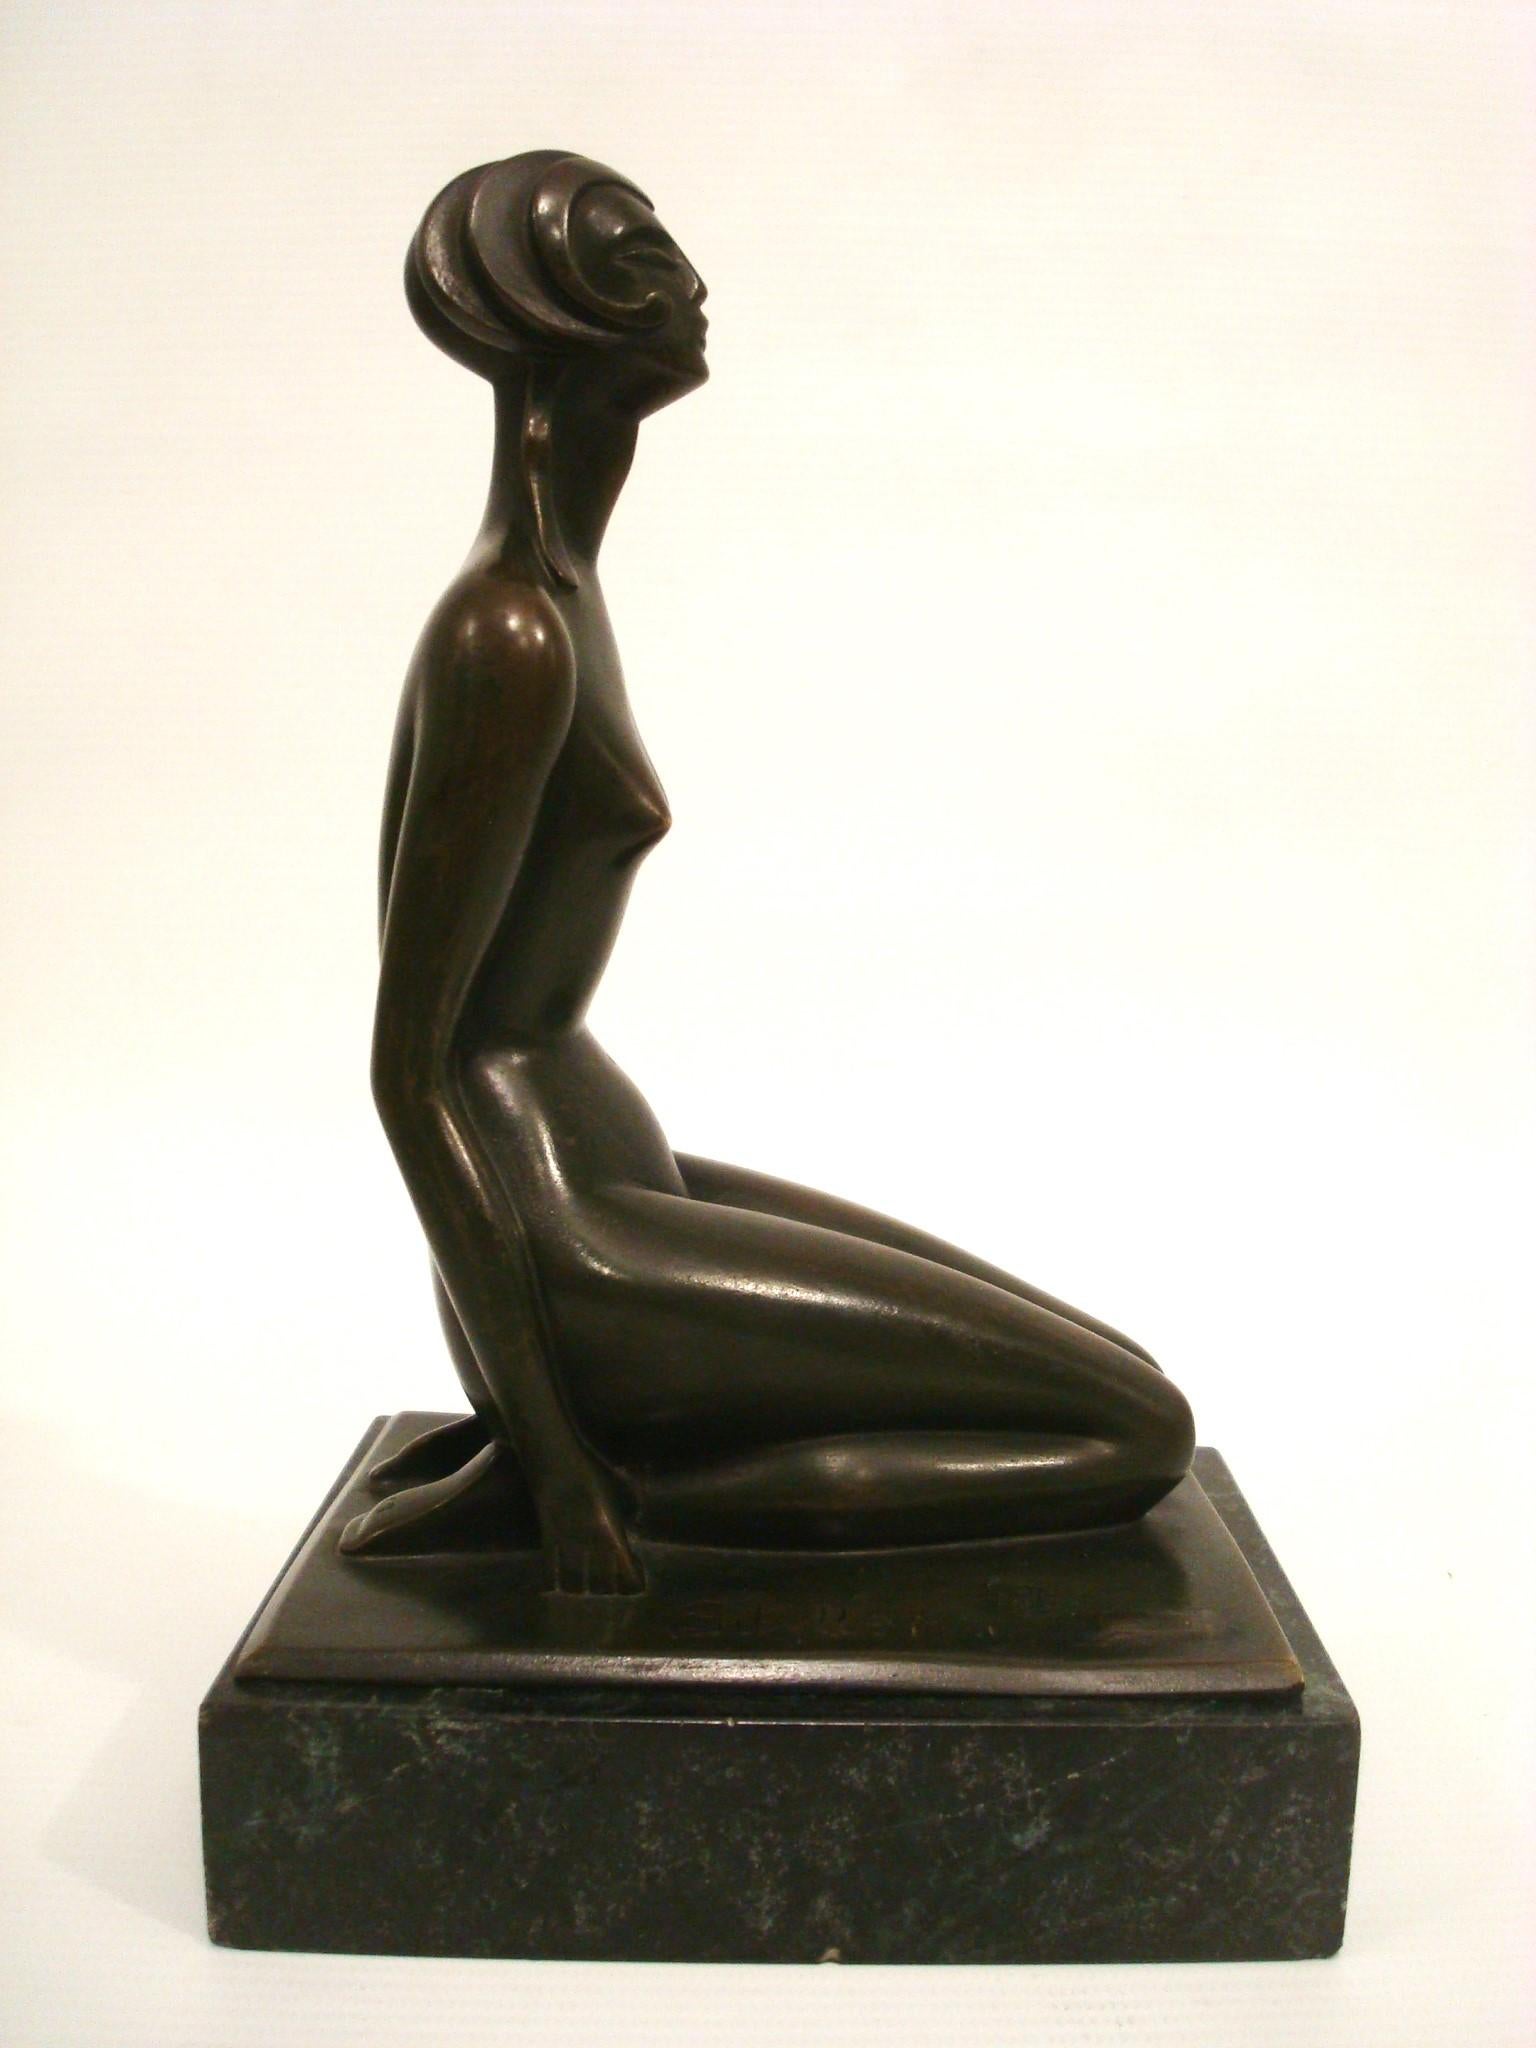 Art Deco Bronzeskulptur Figur einer nackten Frau von Sibylle May, Frankreich 1920er Jahre
Eine wunderschöne Bronzeskulptur von Sibylle May aus dem Art déco.
In der Bronze signiert + Gießereipunze (LA STELE)
Seltene französische Art-Déco-Bronzefigur